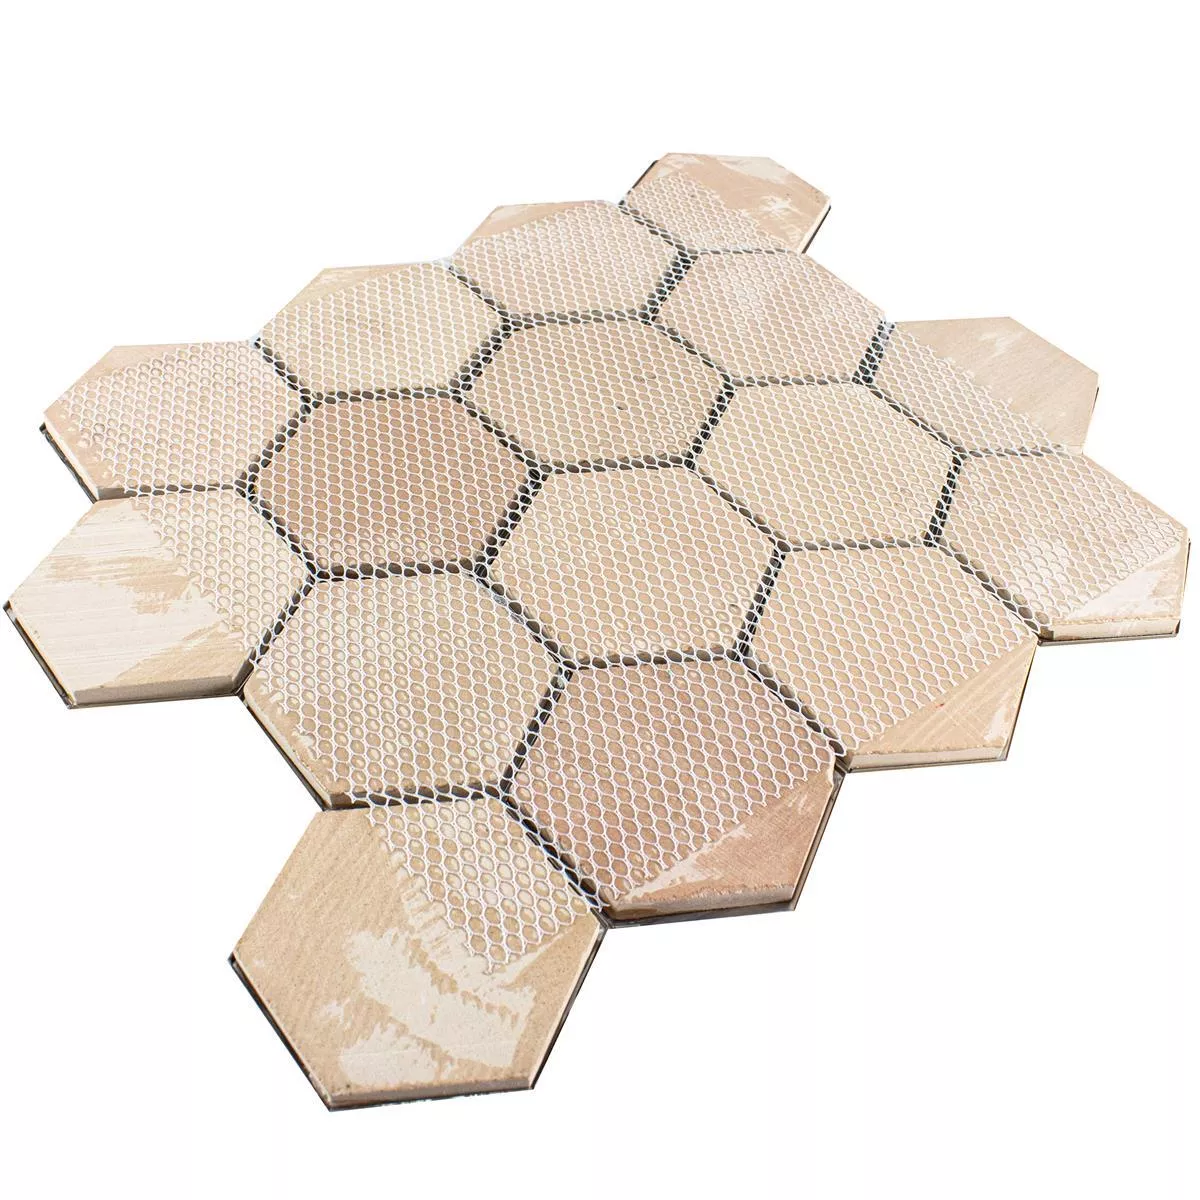 Rostfritt Stål Mosaik Durango Hexagon 3D Guld